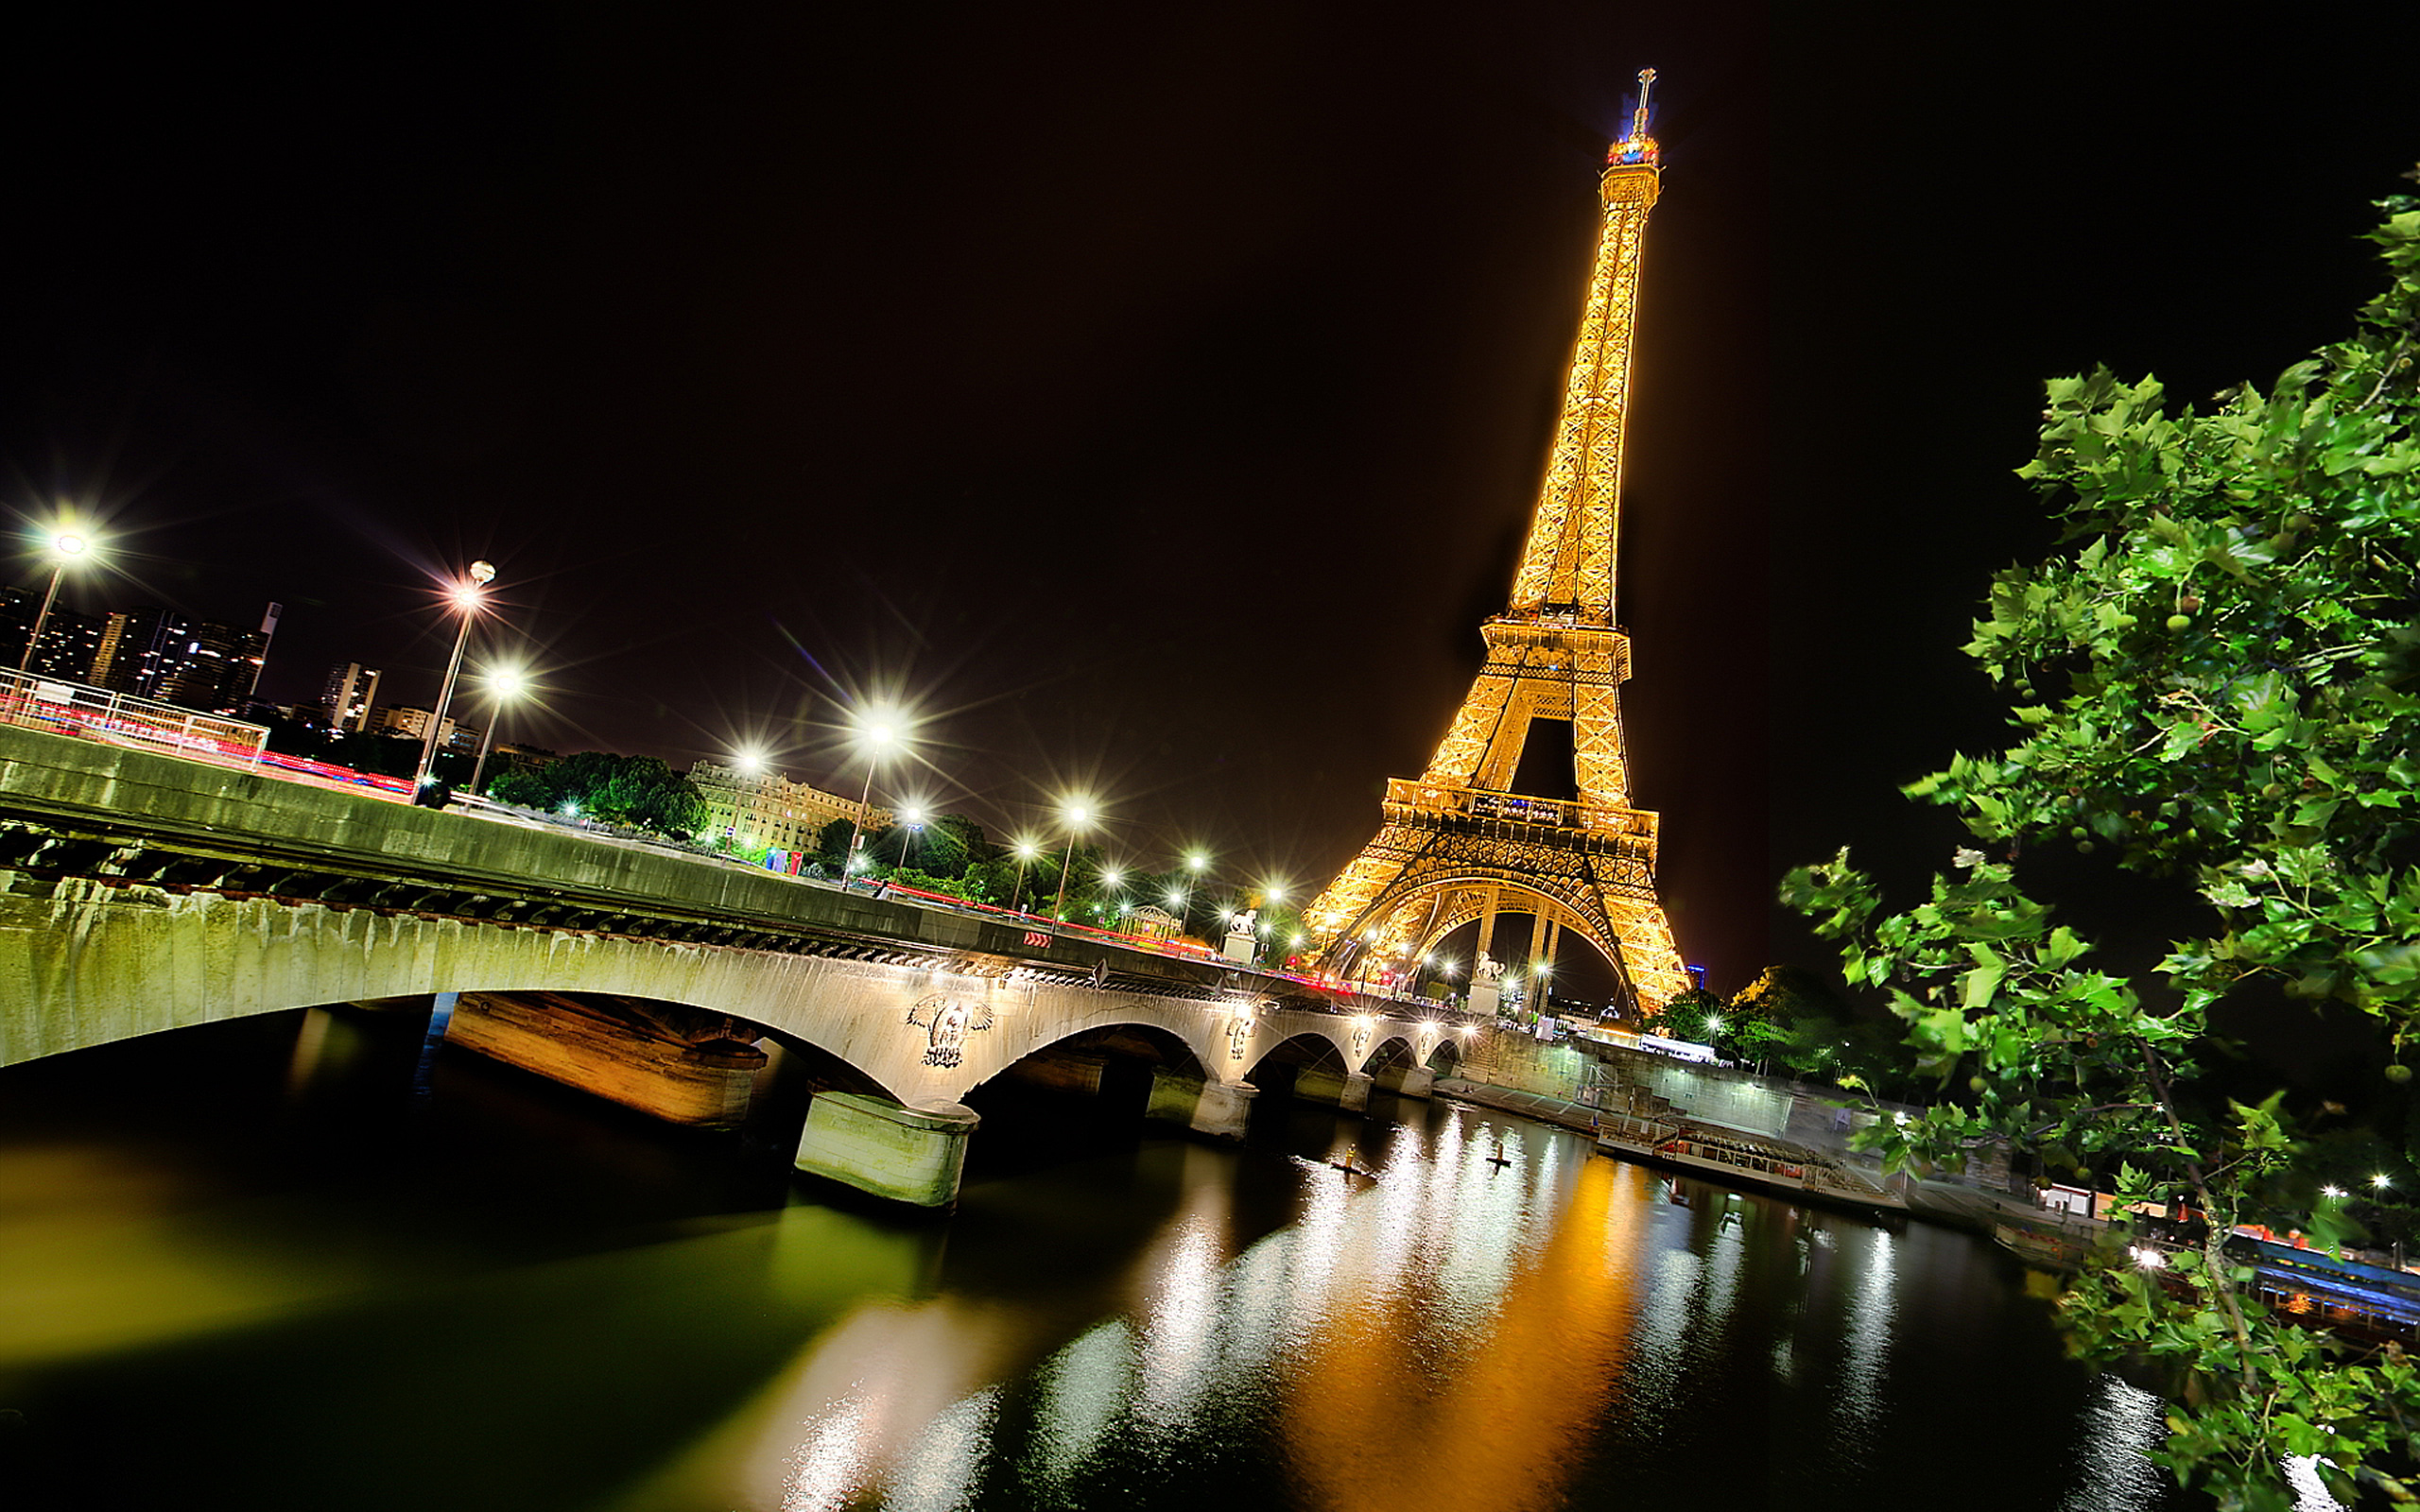 Обои на телефон самые красивые в мире. Эйфелева башня в Париже. Ночной Париж Эйфелева башня. Эйфелева башня (la Tour Eiffel). Эйфель башня ночью.